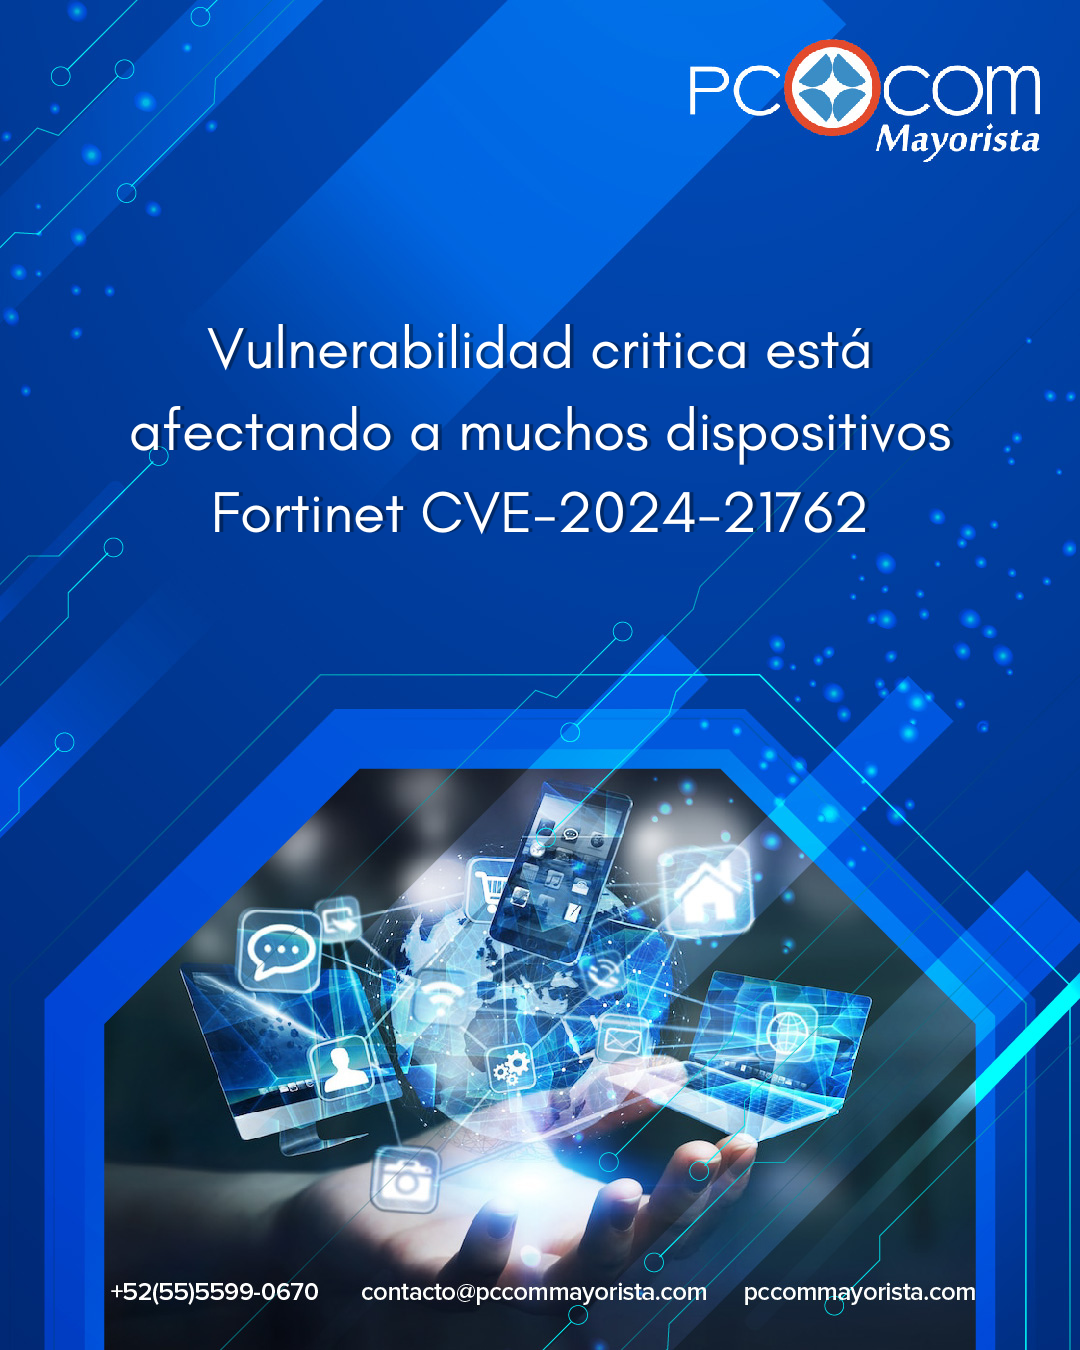 Aviso sobre amenazas de ciberseguridad: Vulnerabilidad critica está afectando a muchos dispositivos Fortinet CVE-2024-21762